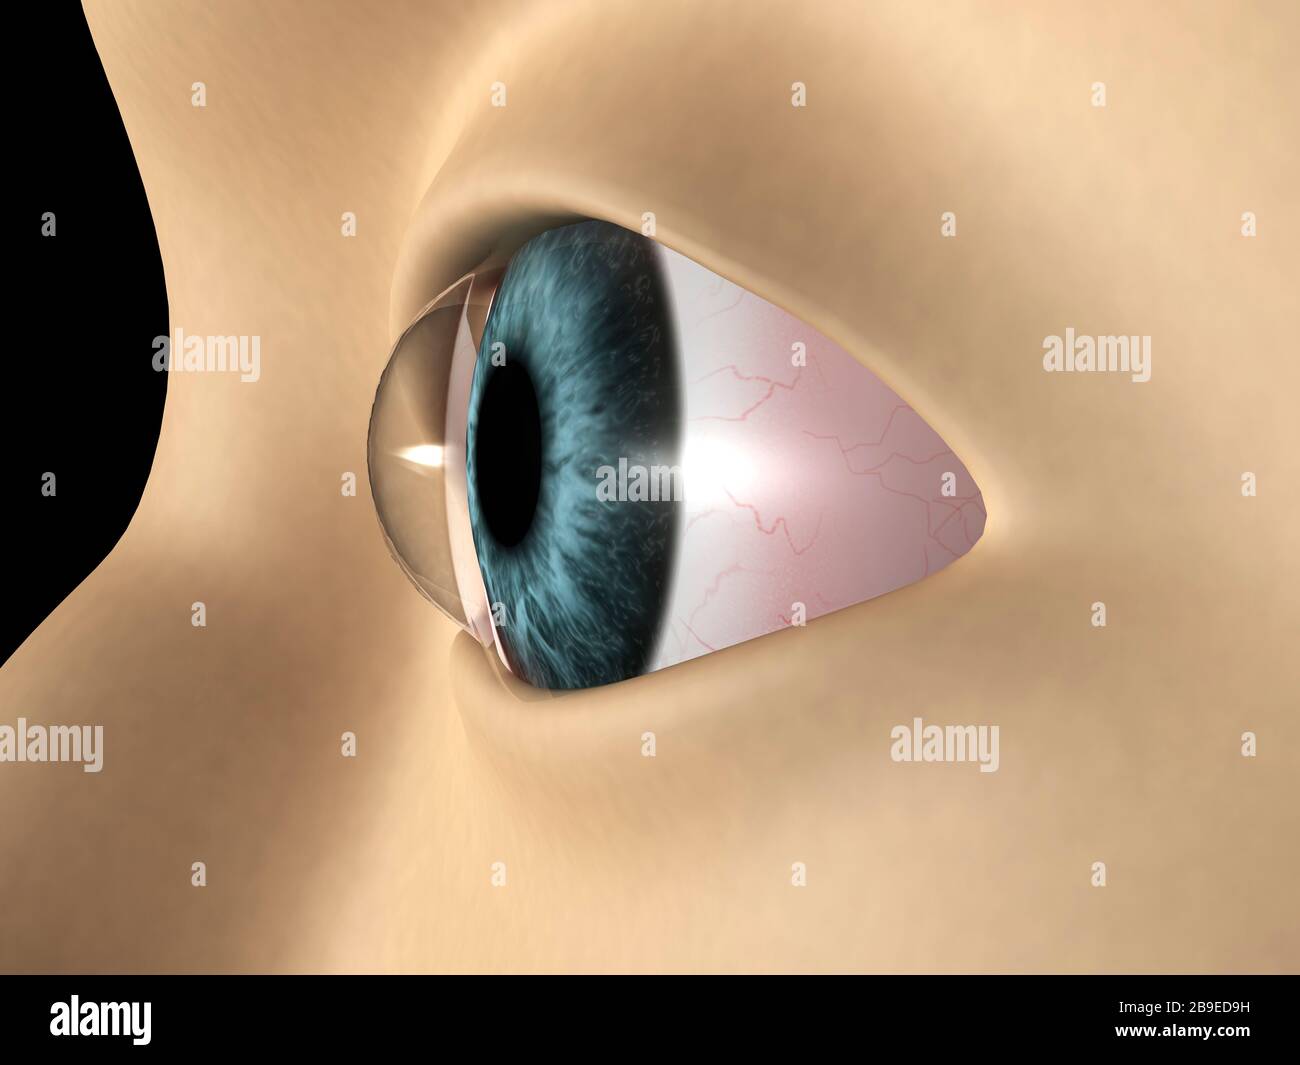 Ilustración médica que muestra queratocono en el ojo. Foto de stock